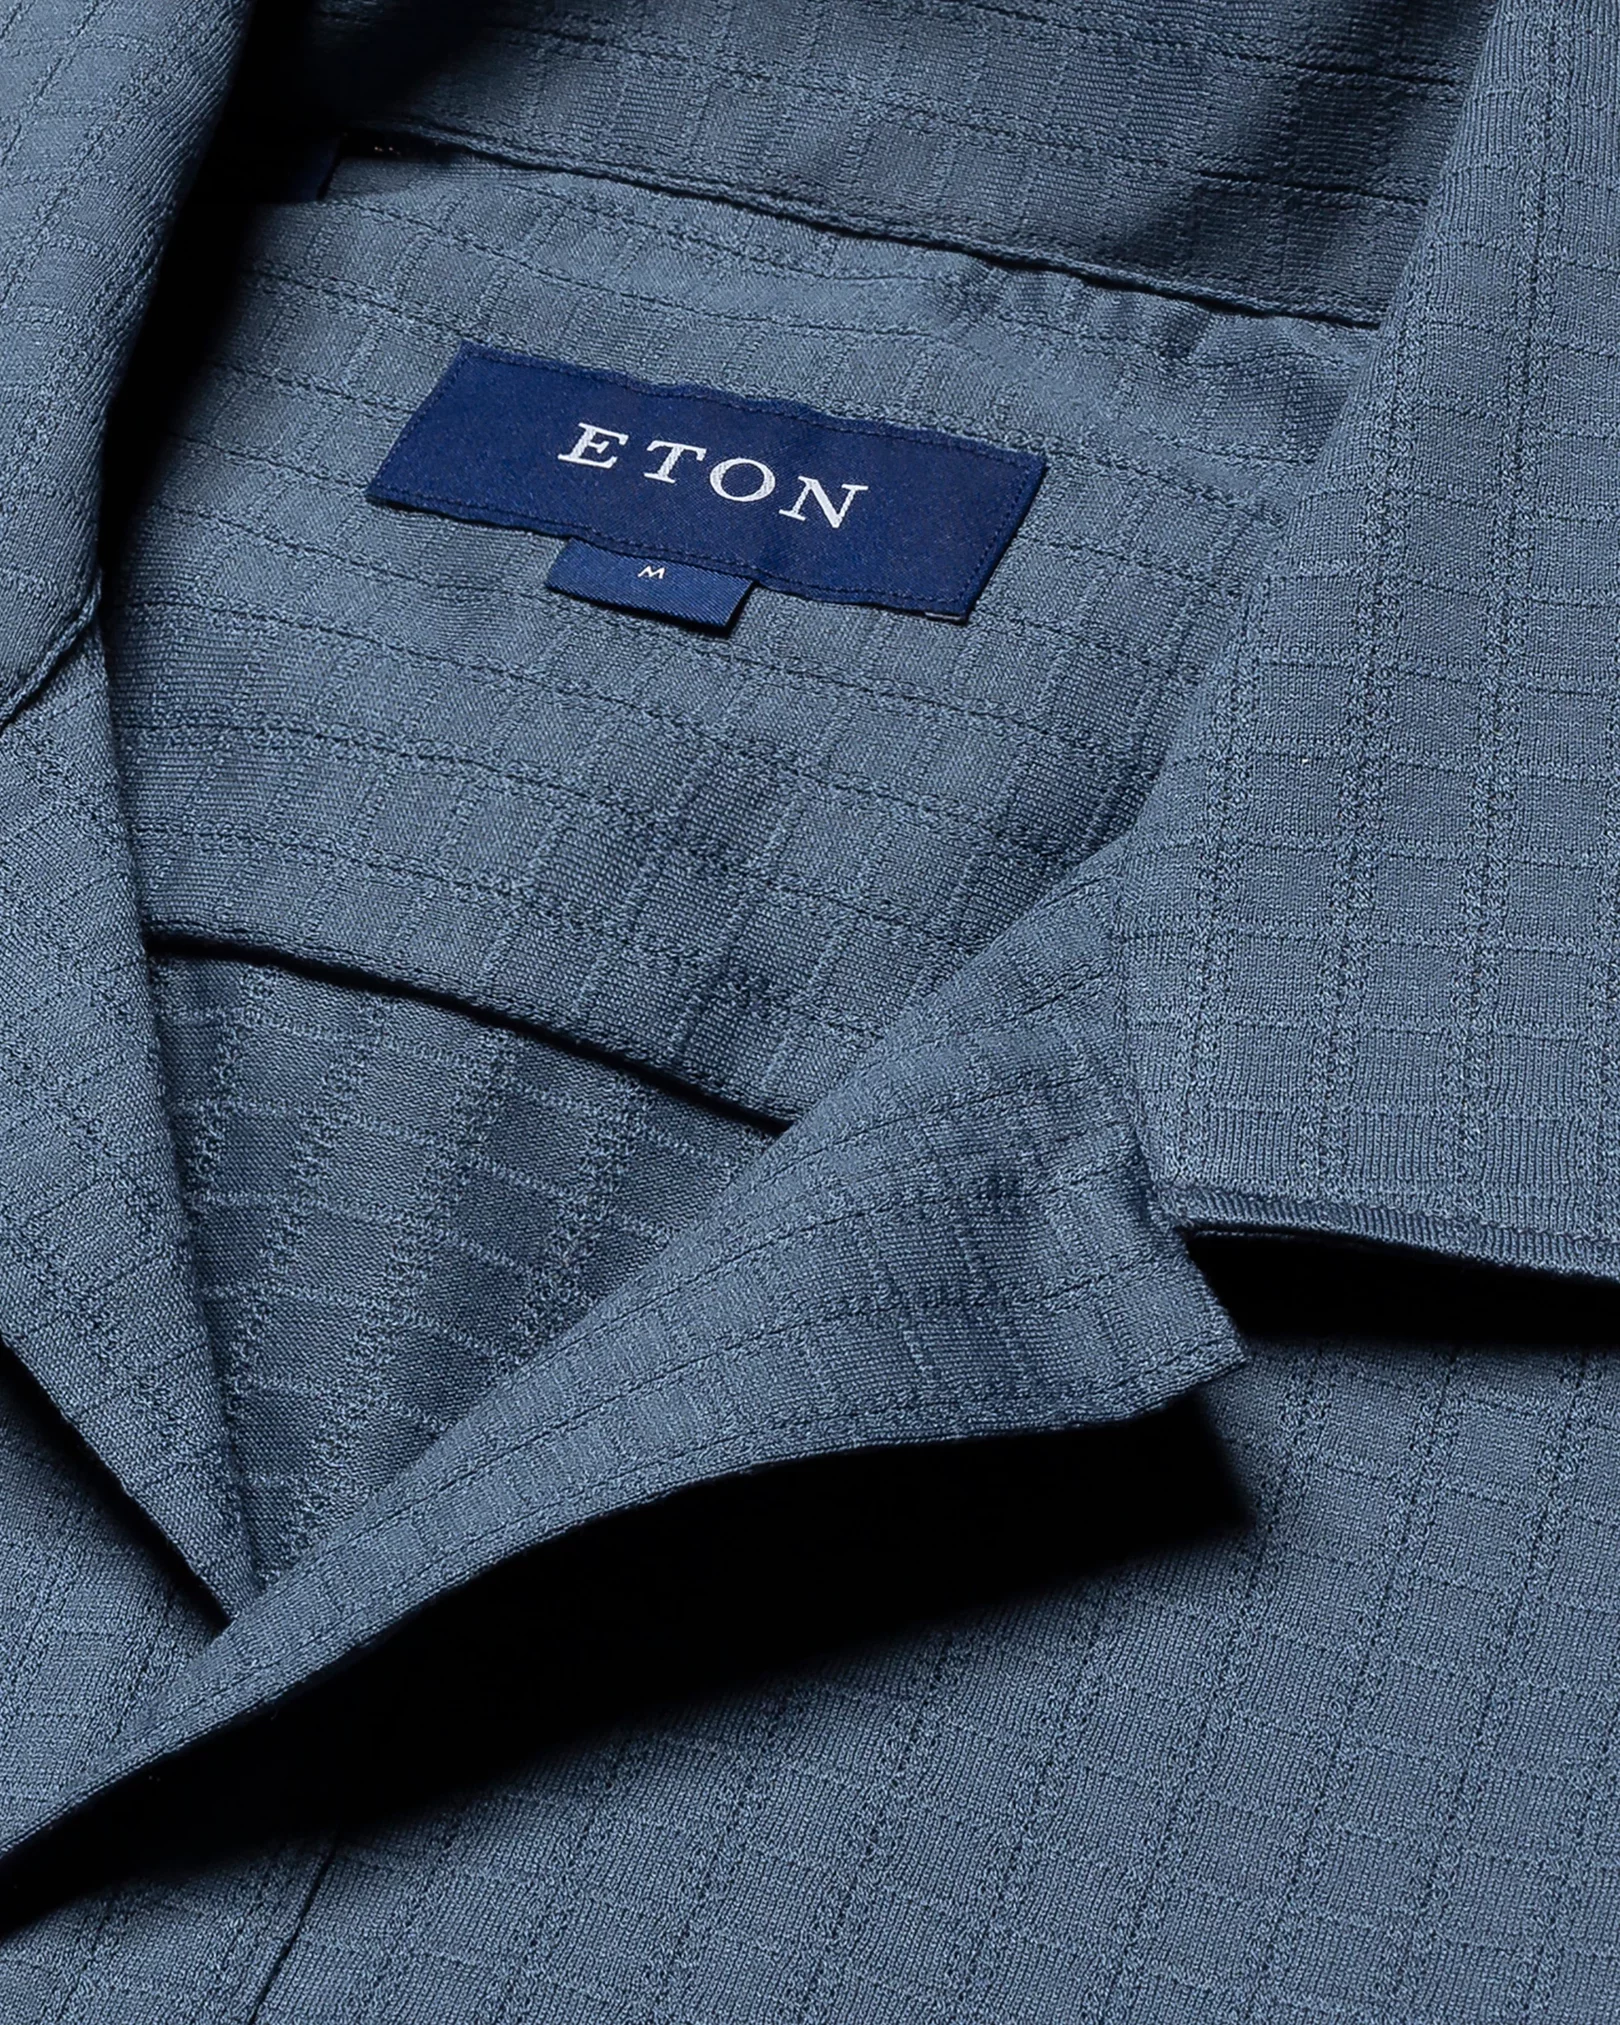 Eton - dark blue jacquard knit